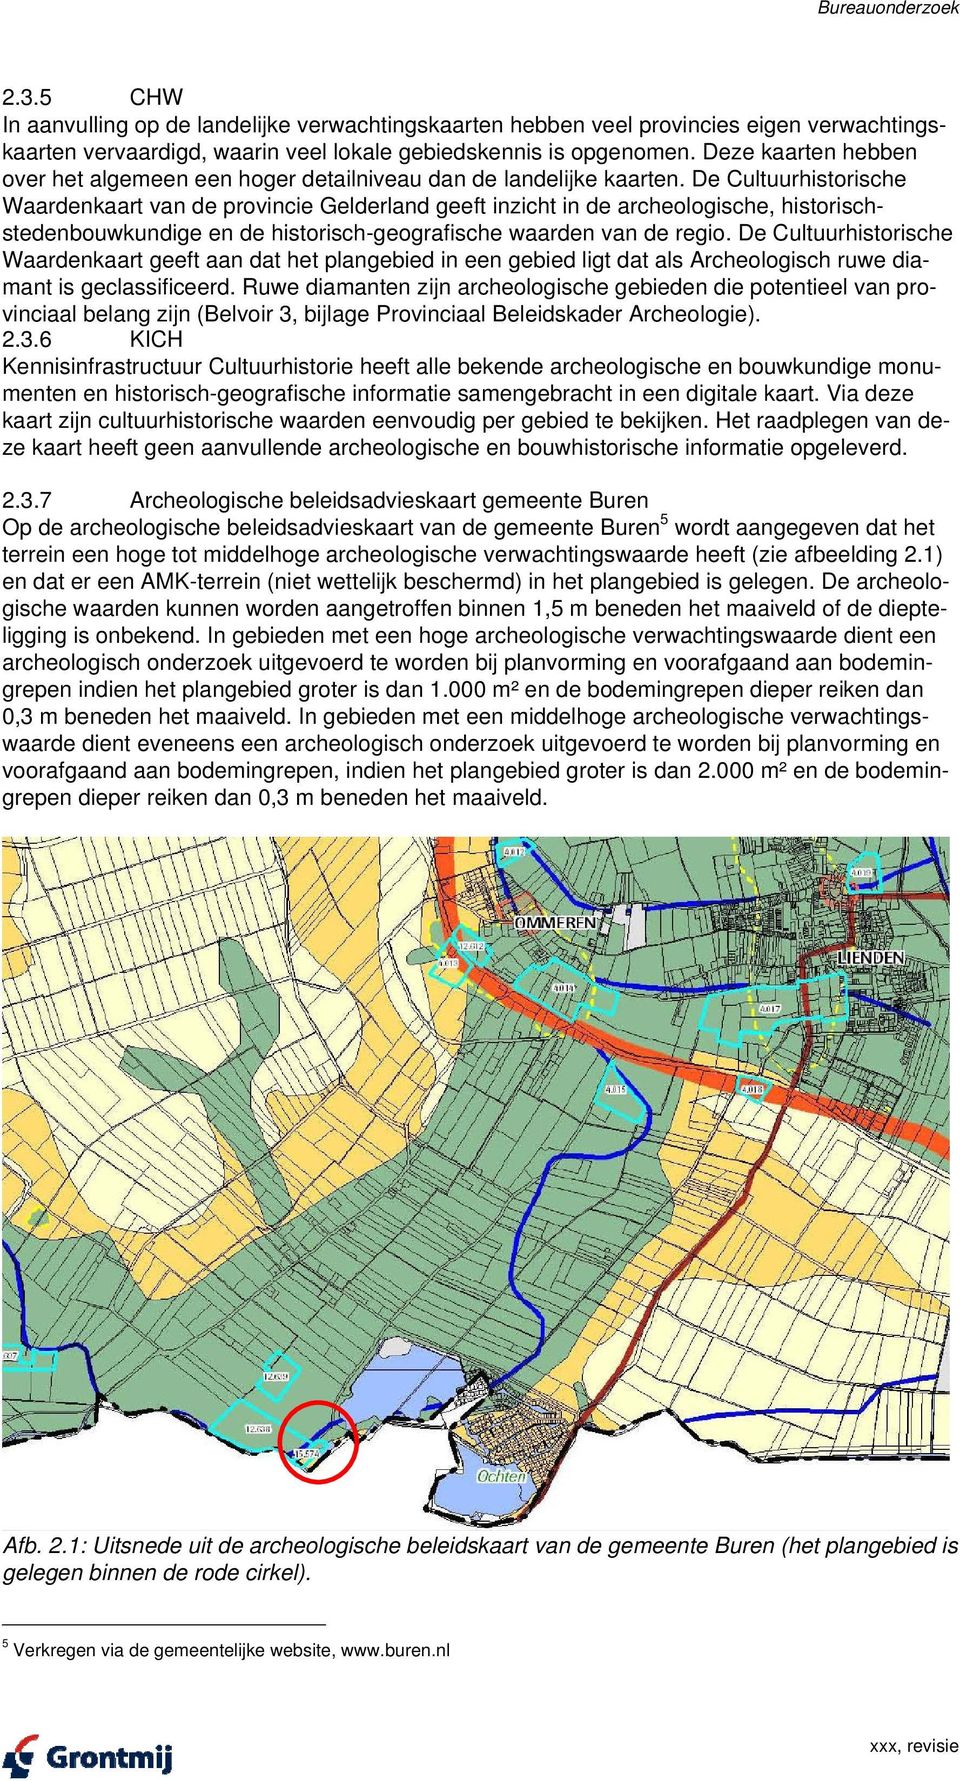 De Cultuurhistorische Waardenkaart van de provincie Gelderland geeft inzicht in de archeologische, historischstedenbouwkundige en de historisch-geografische waarden van de regio.